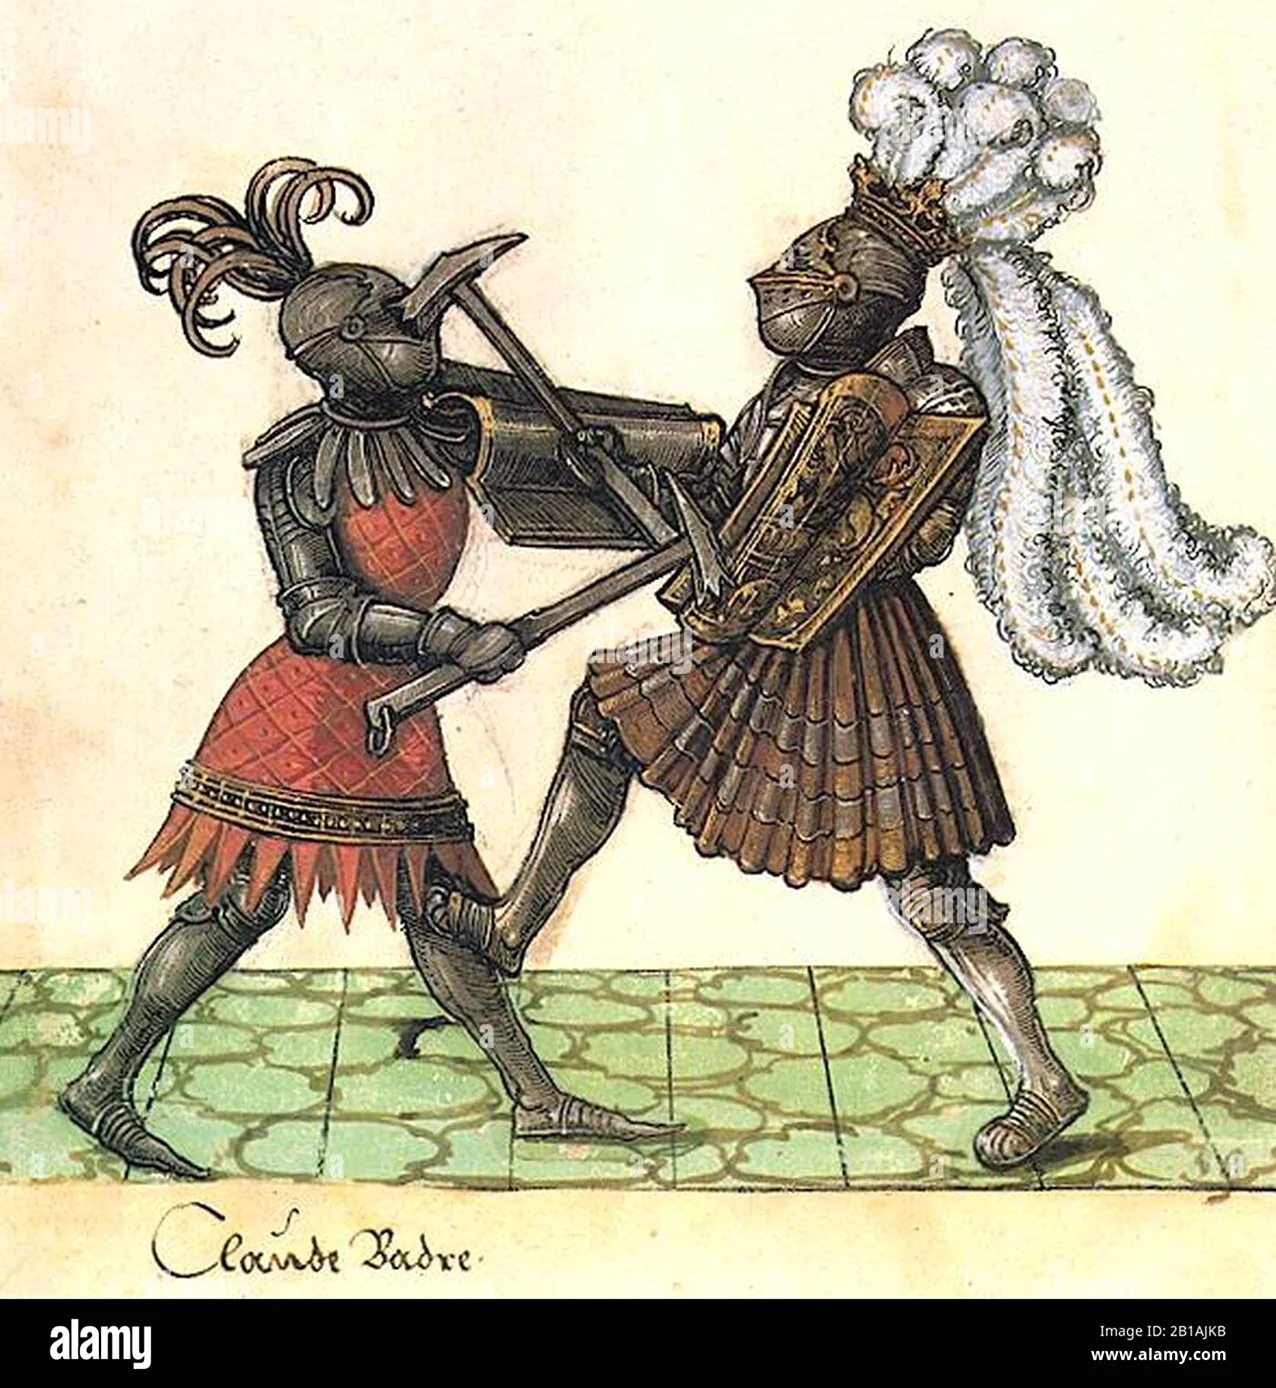 Забавное средневековье. Прикольная картинка